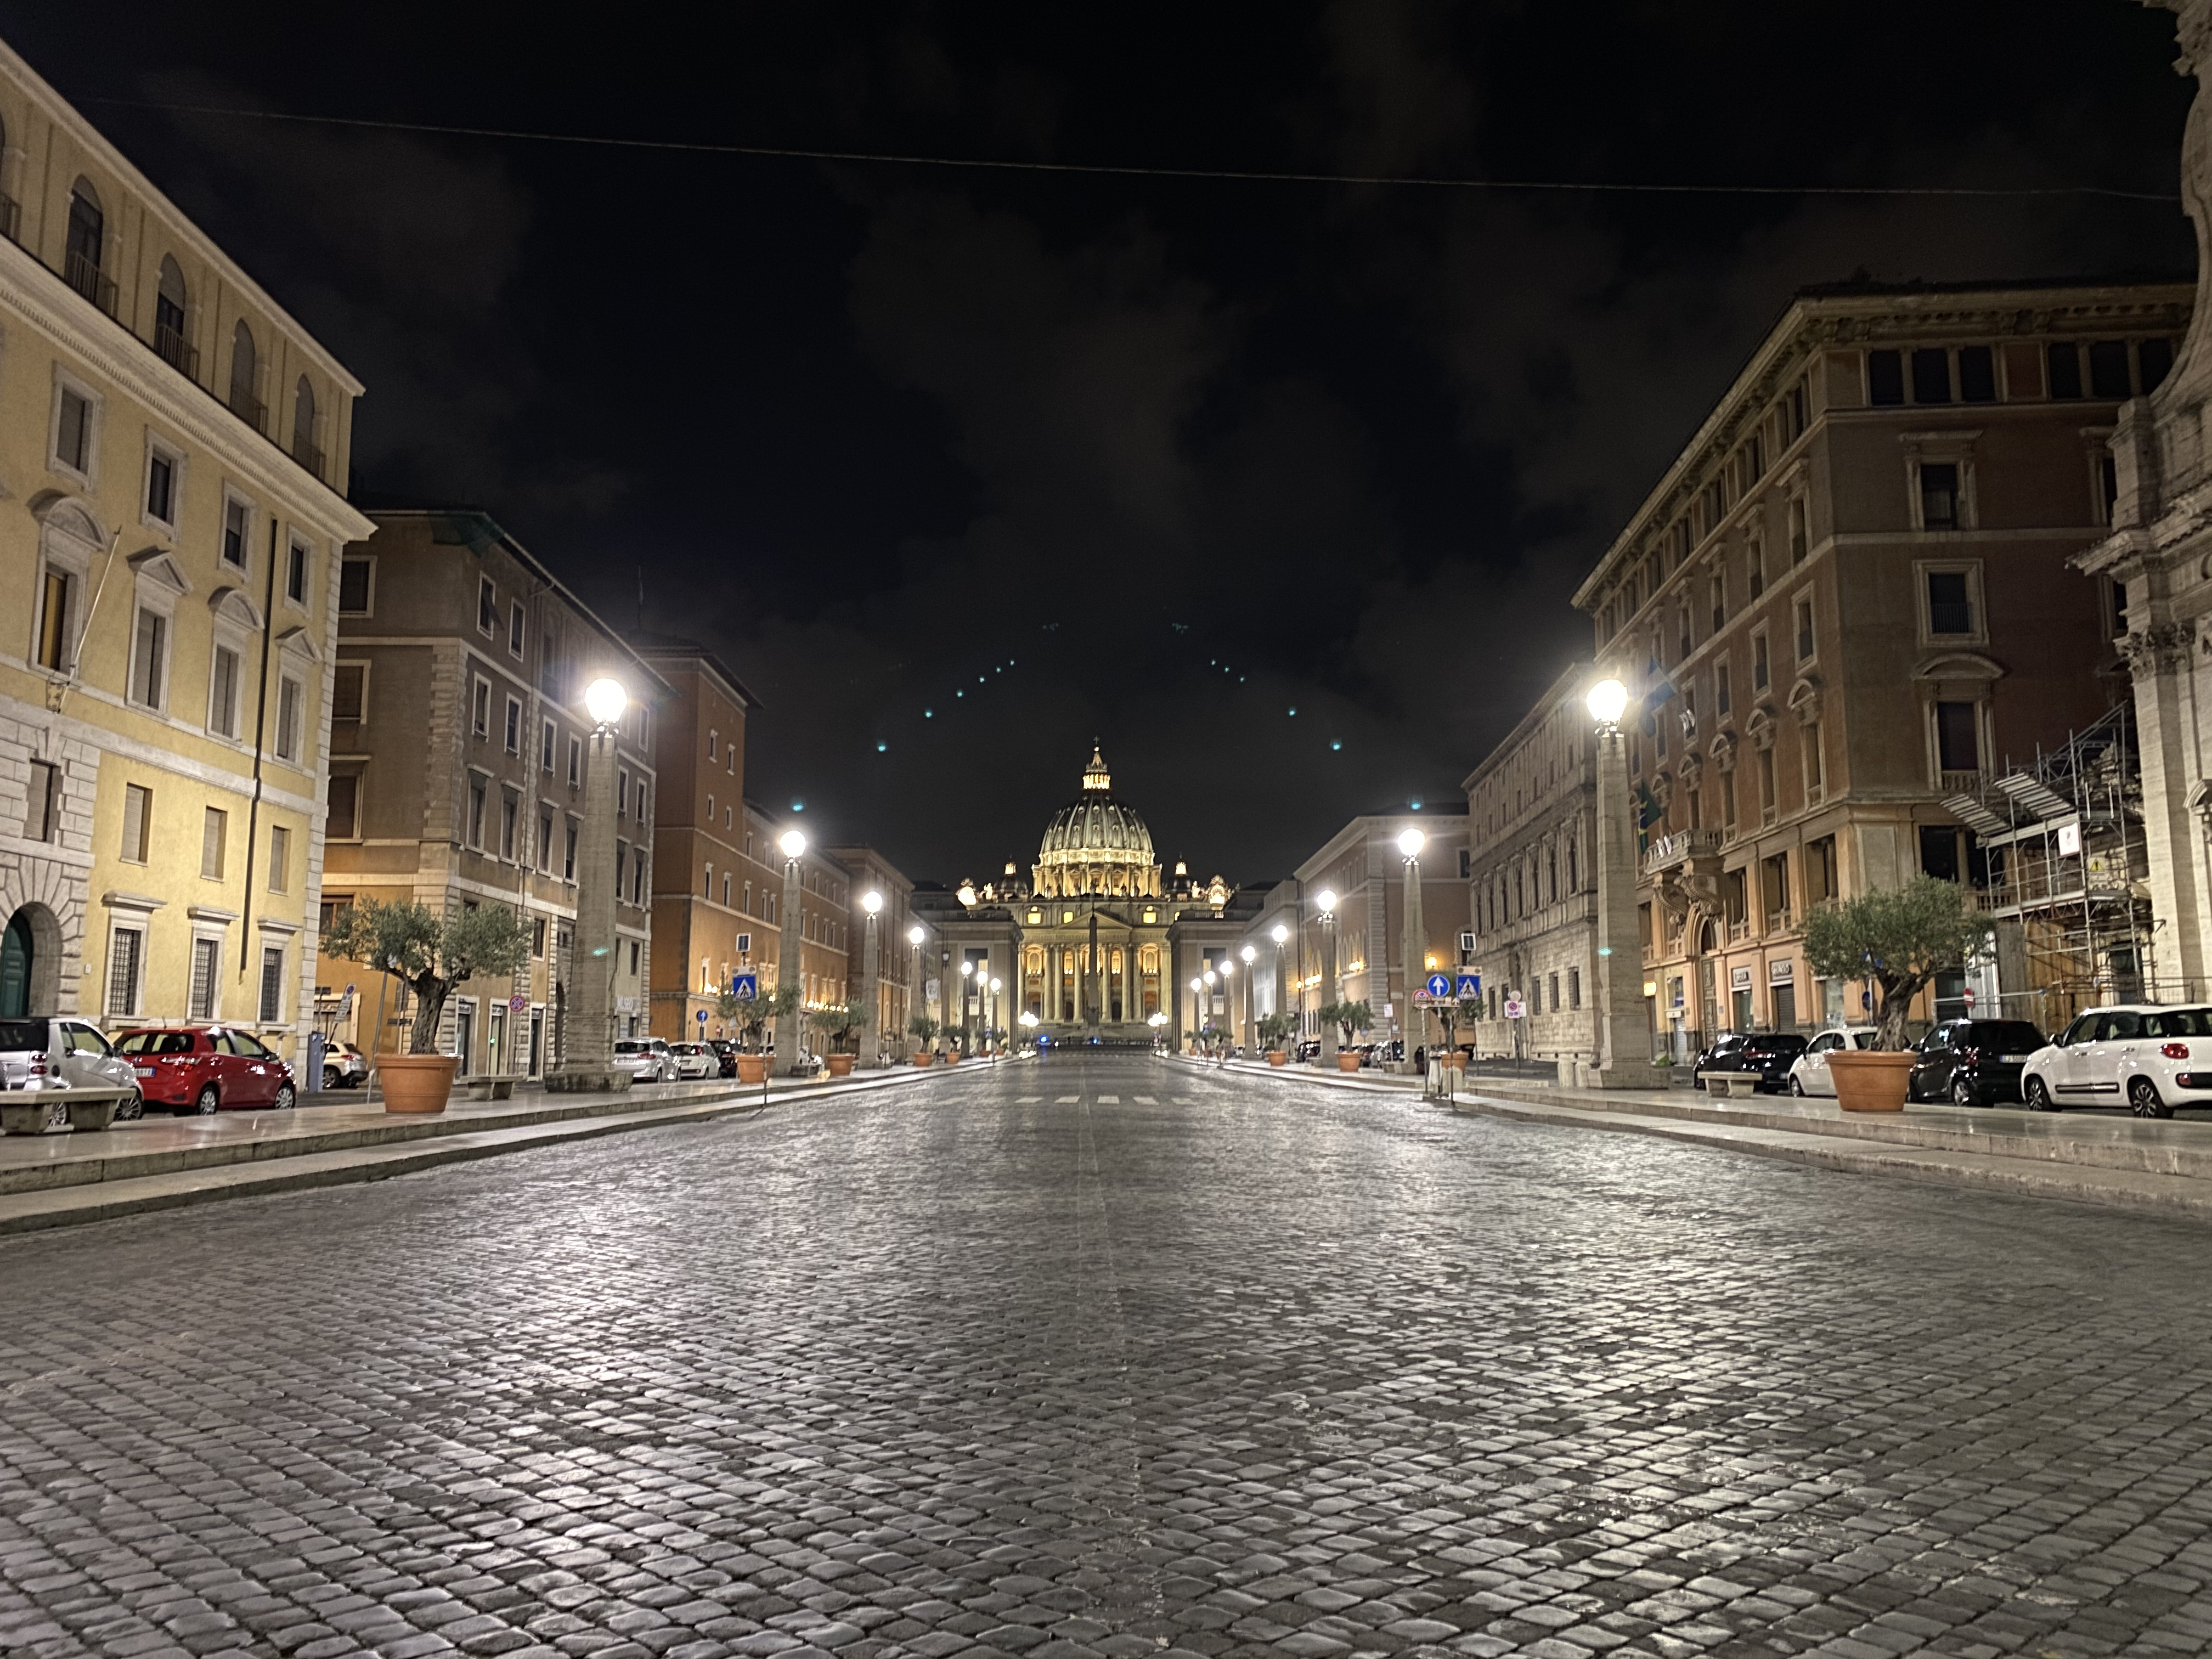 Via della Conciliazione and St. Peter’s Basilica, wide camera, night mode on.